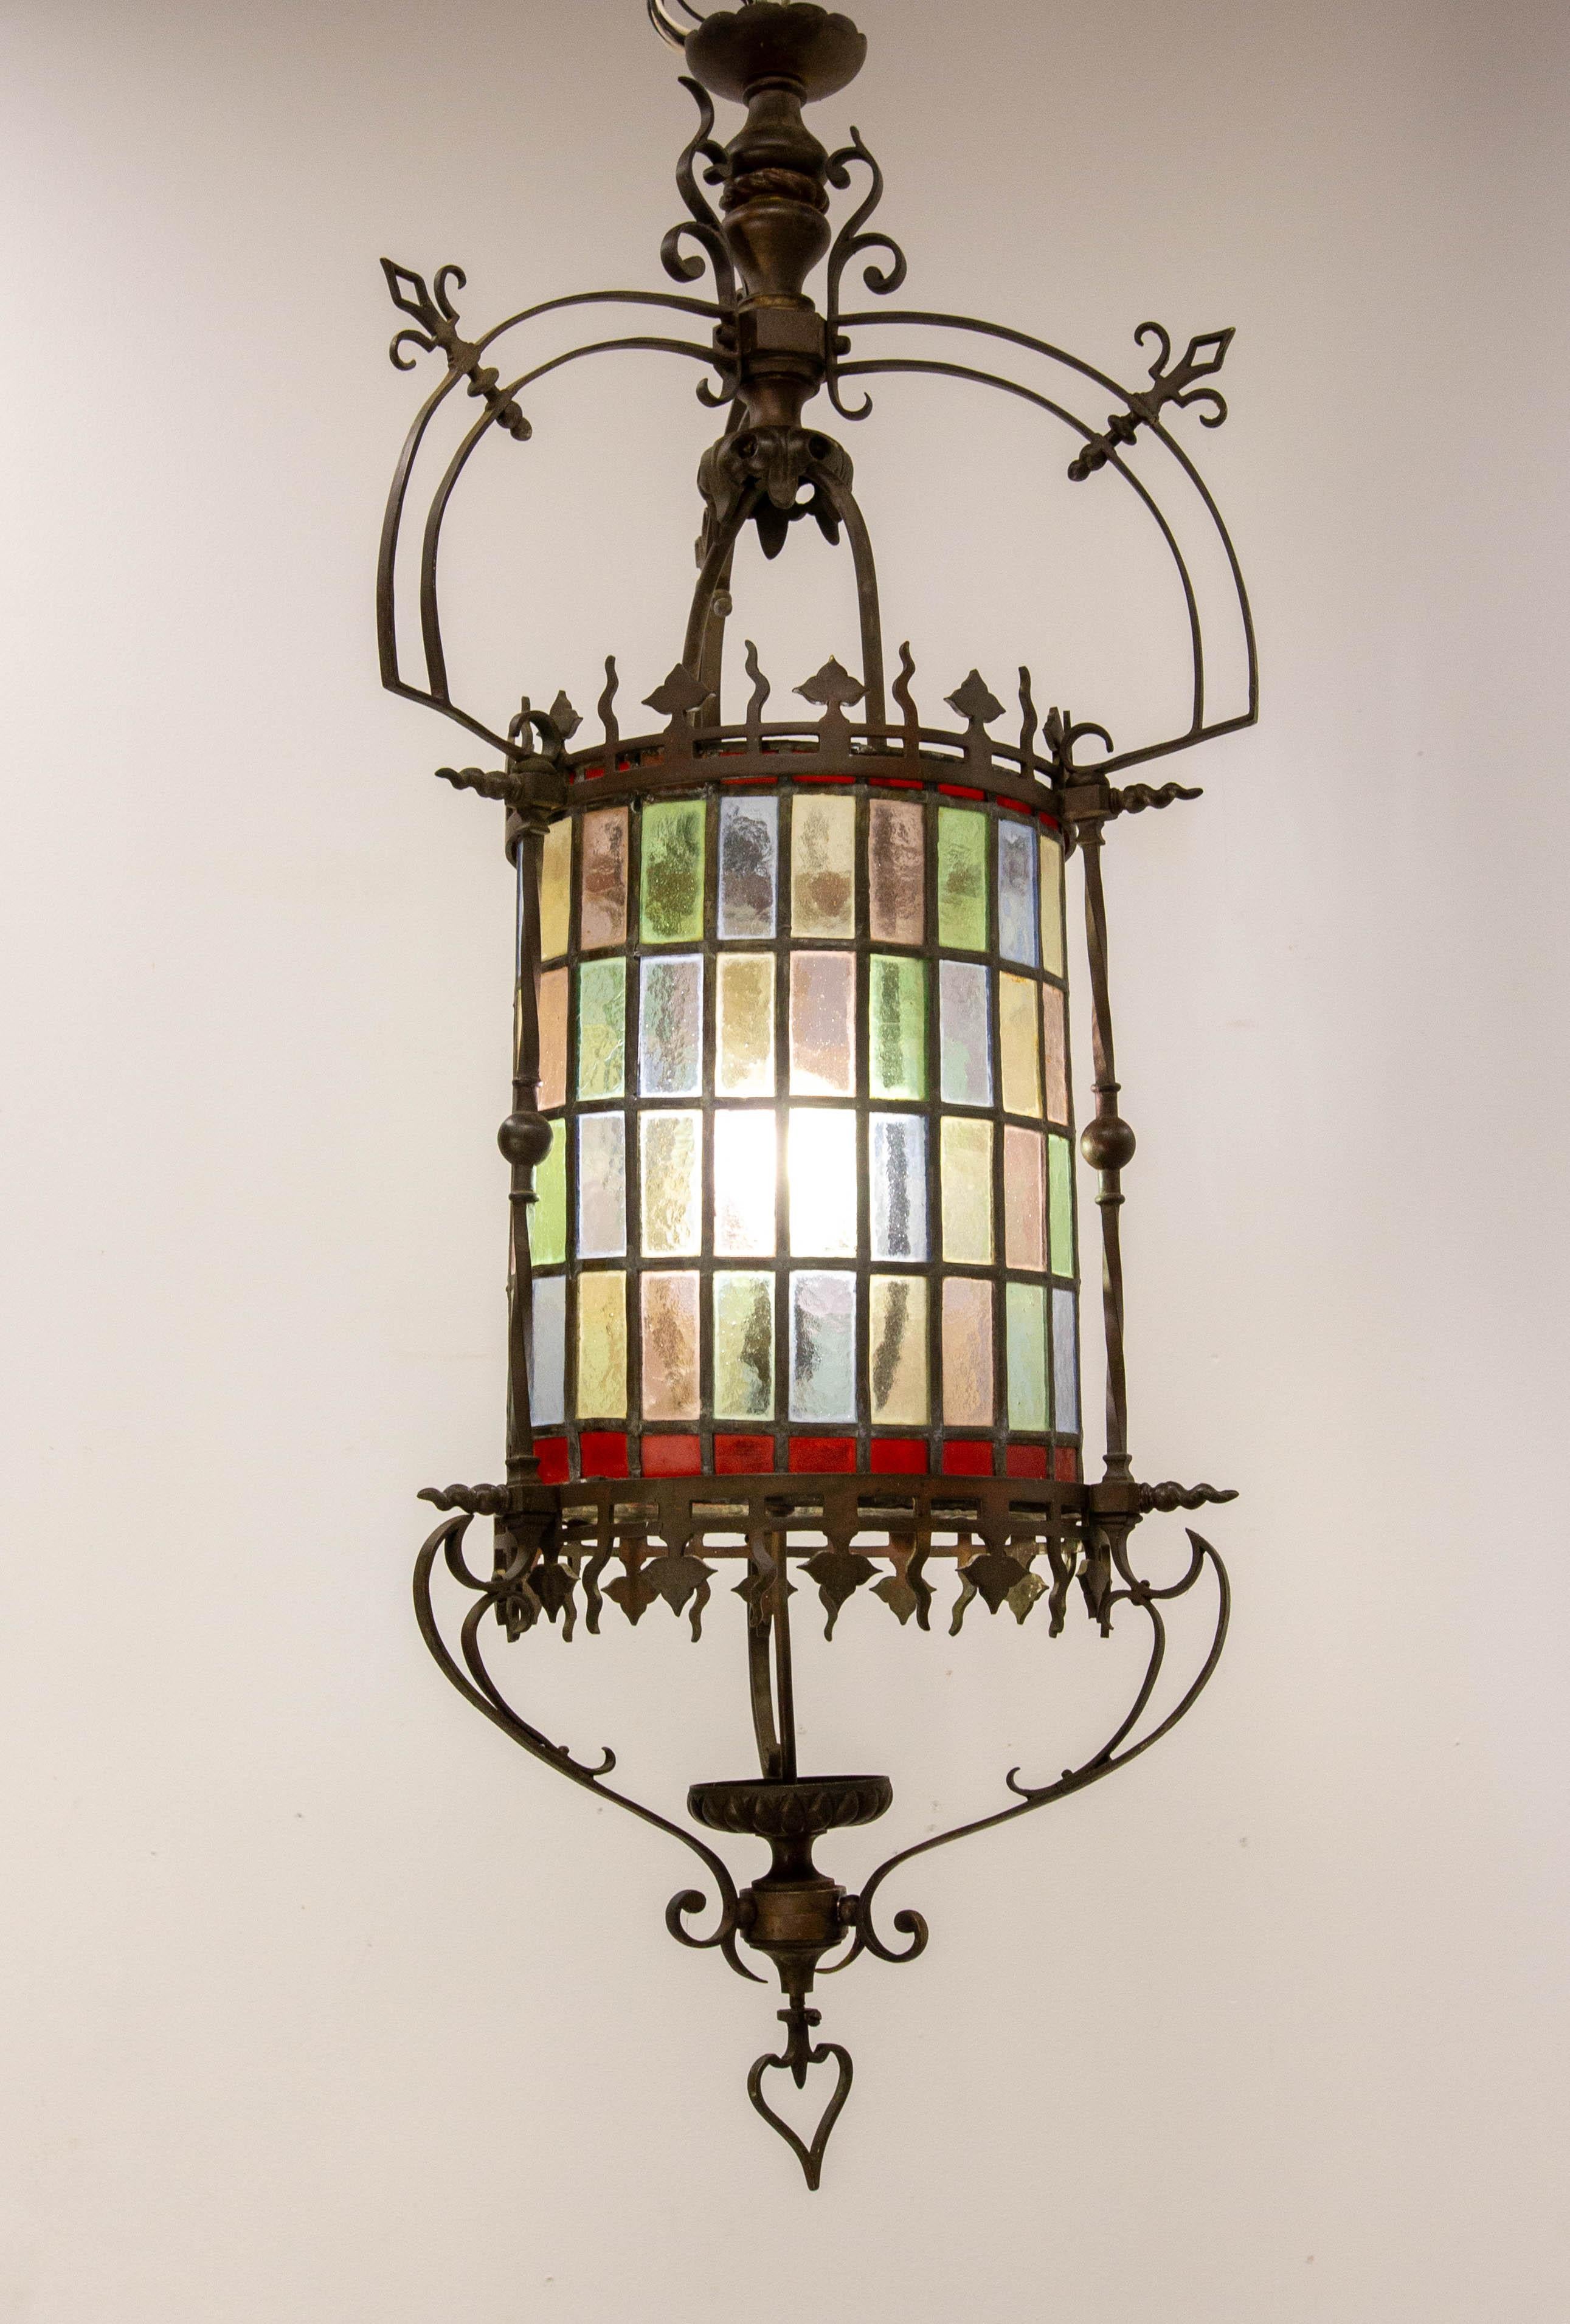 Lustre Art Nouveau, français
Verre coloré et bronze
Fabriqué à la fin du 19ème siècle, c'est un luminaire conçu pour fonctionner au gaz qui a été électrifié au 20ème siècle.
Bon état, quelques soudures ont été effectuées pour réparer le lustre (voir